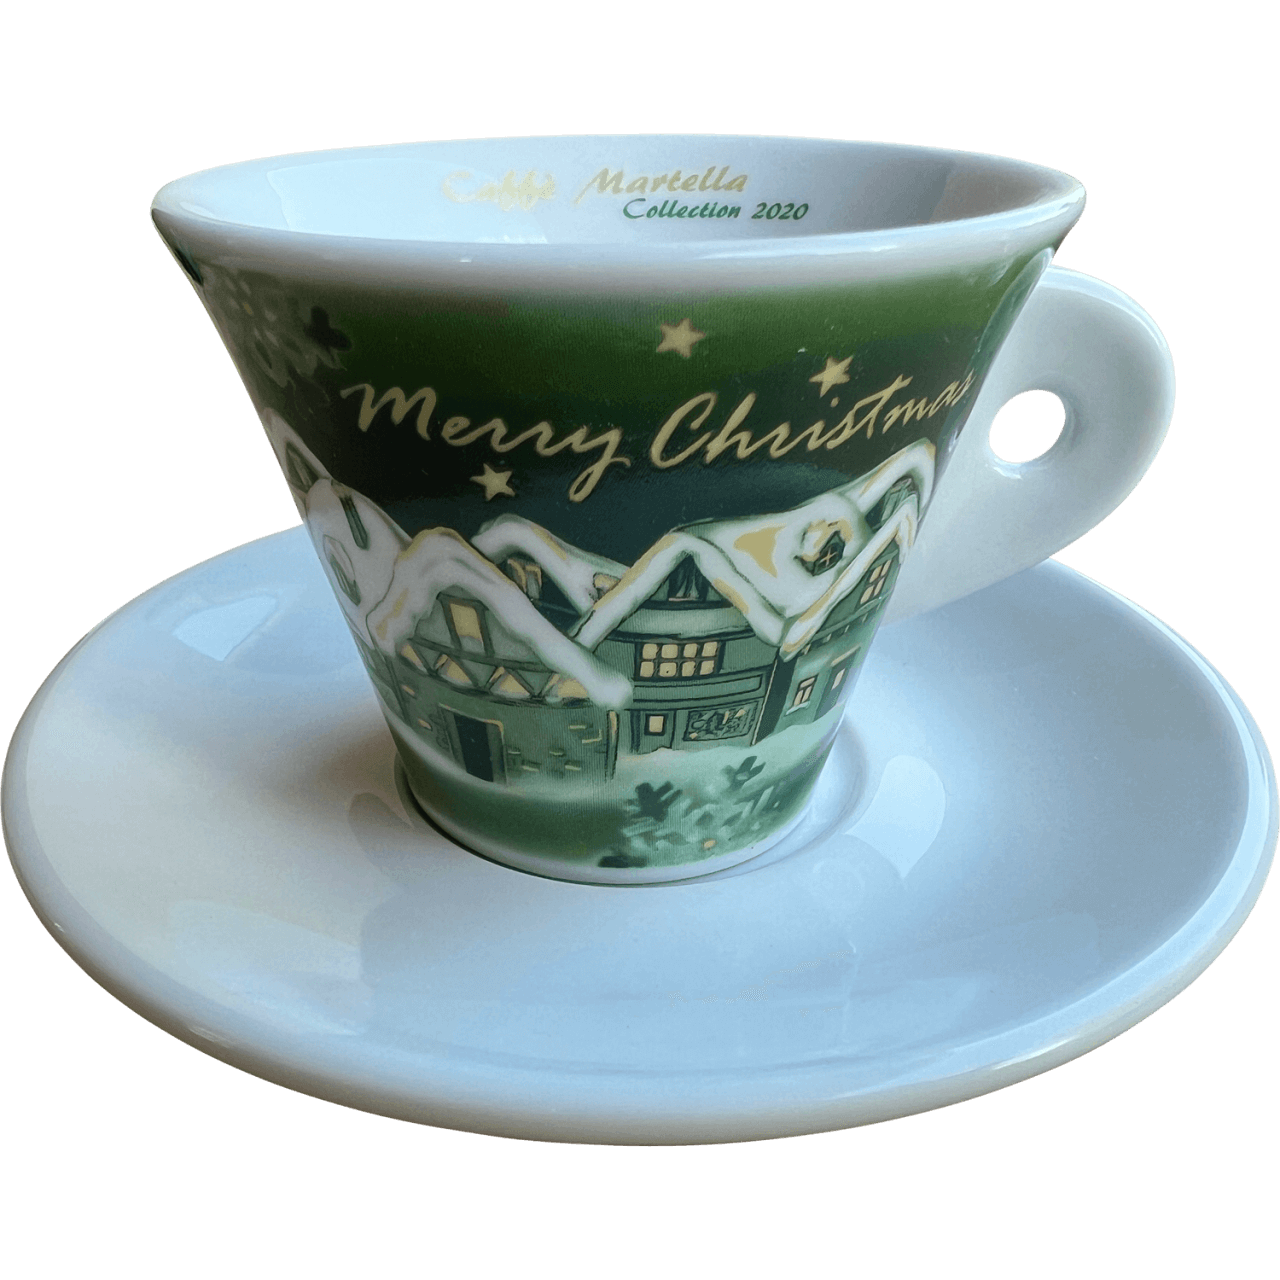 Martella Espresso Tasse grün Collection 2020